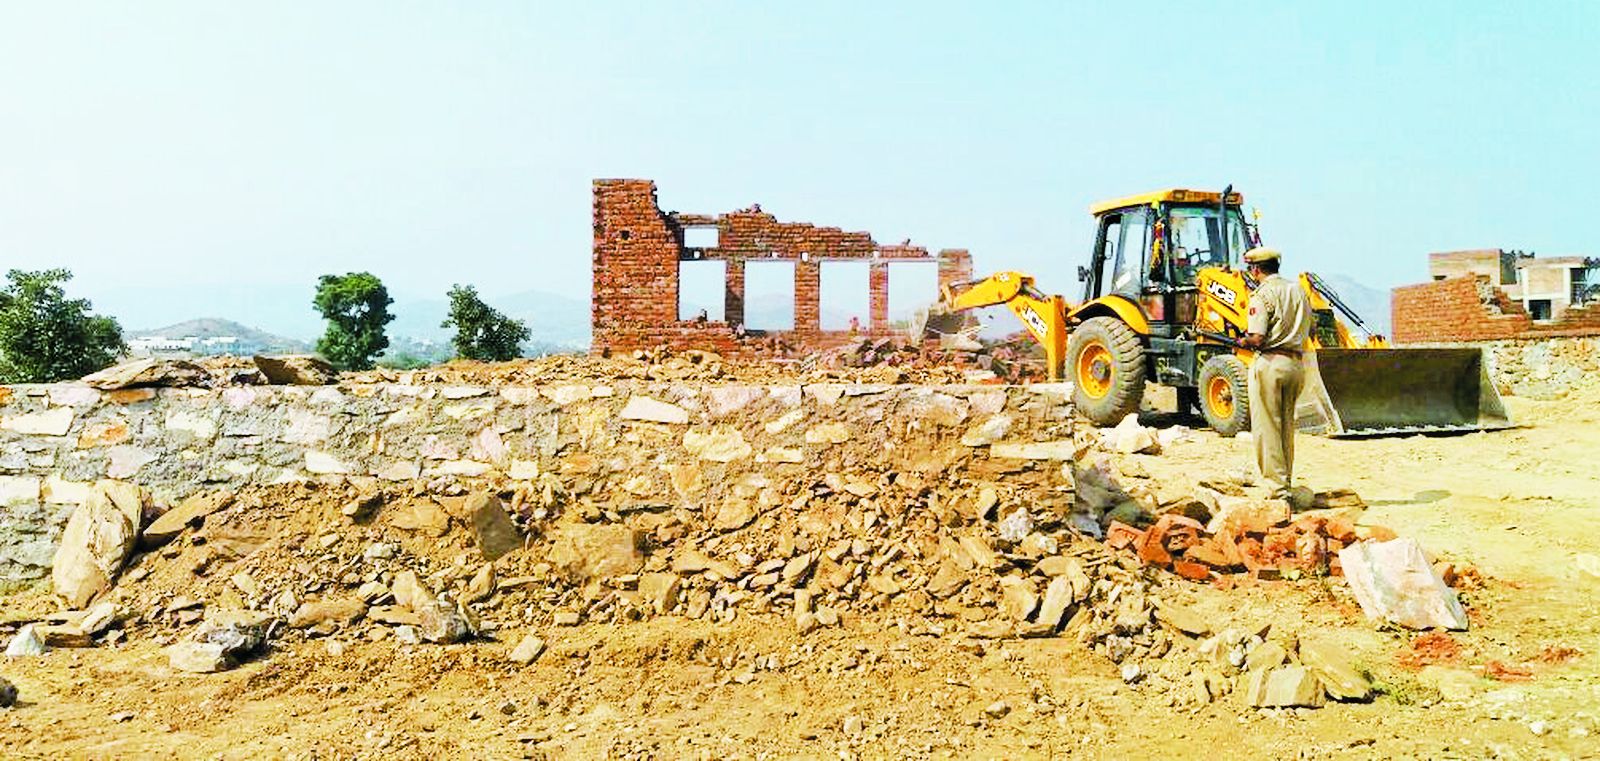 UDAIPUR: uit work in udaipur